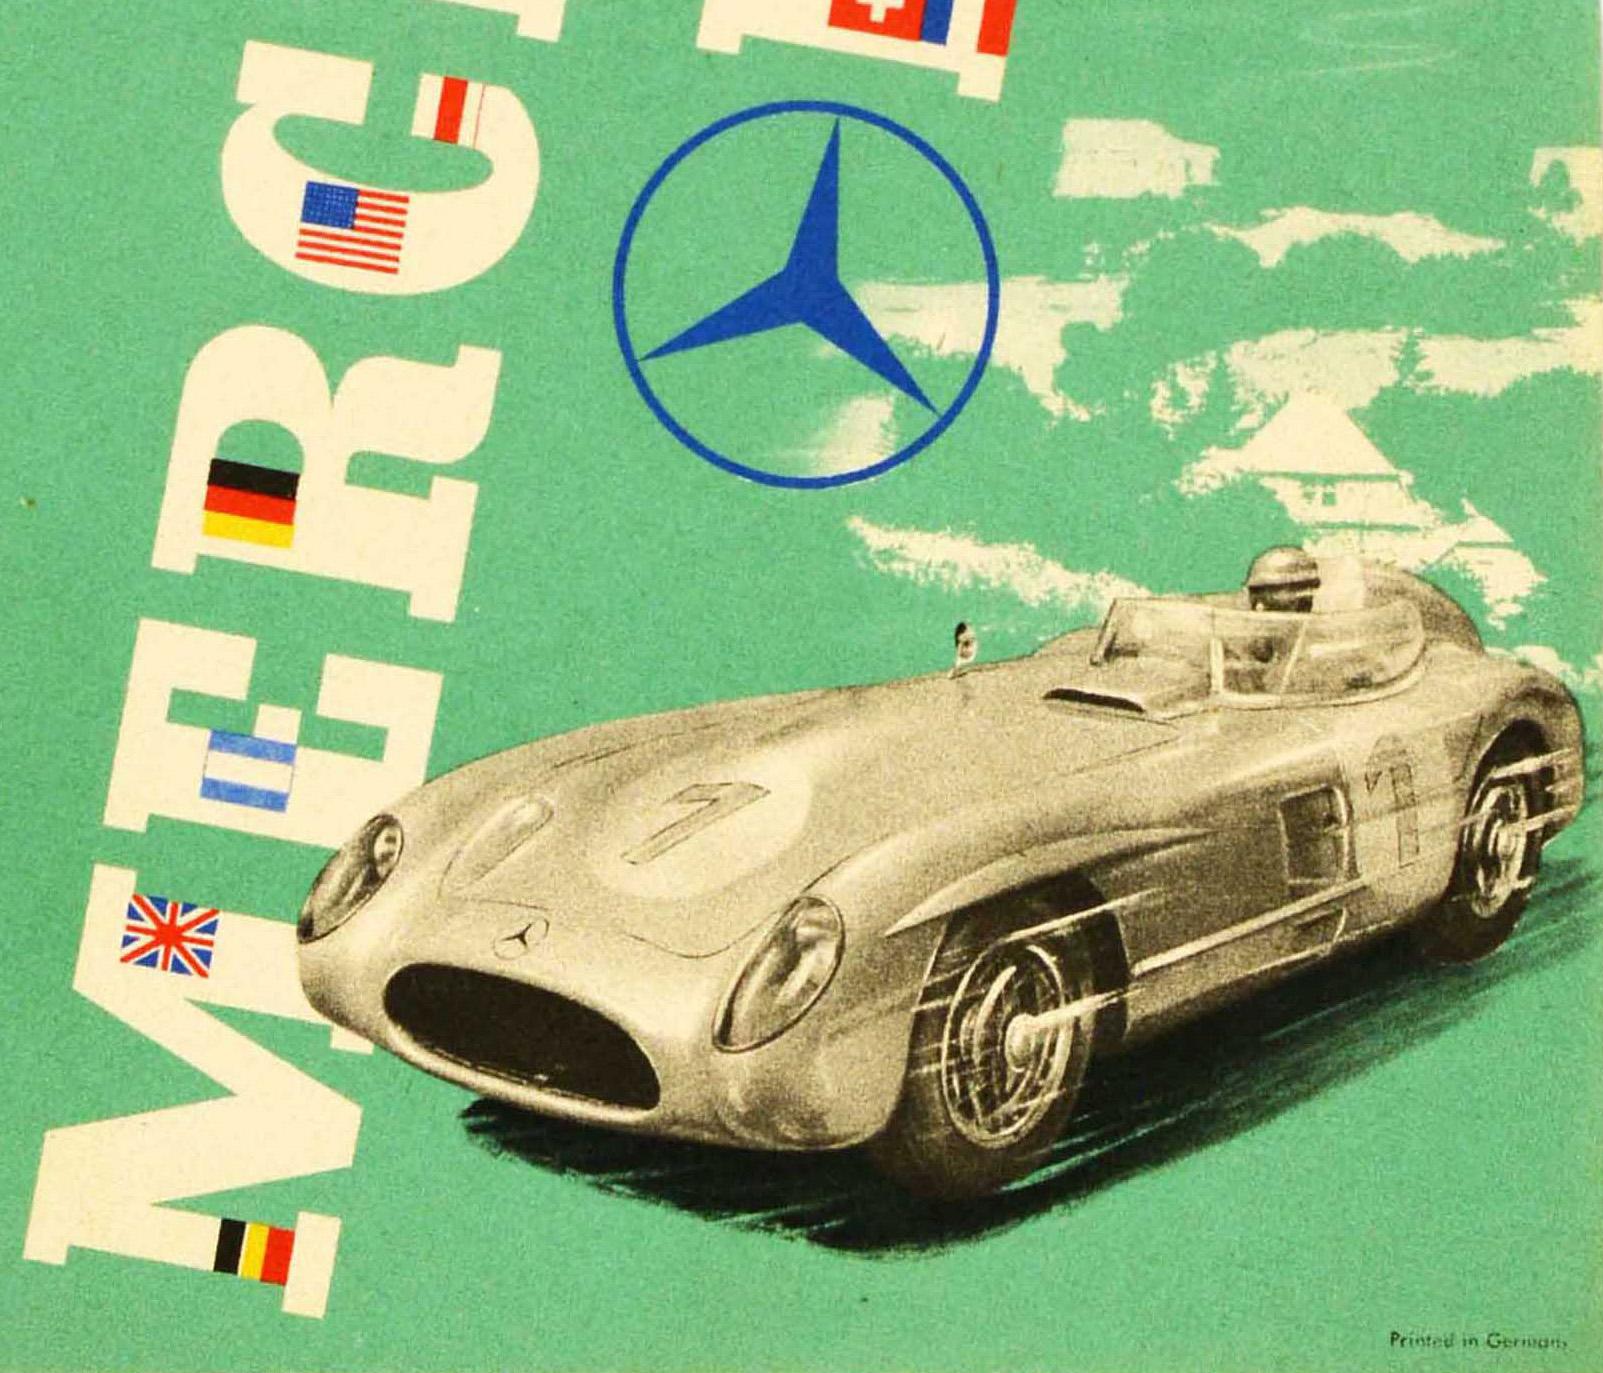 Original-Motorsportplakat zur Feier des Mercedes-Benz-Sieges bei der XVIII. Internat. ADAC Eifelrennen 1955 der Sportwagen (300 SLR) mit dem Weltmeister Juan Manuel Fangio auf Platz 1 2. Stirling Moss 4. Karl Kling mit dem dynamischen Motiv eines